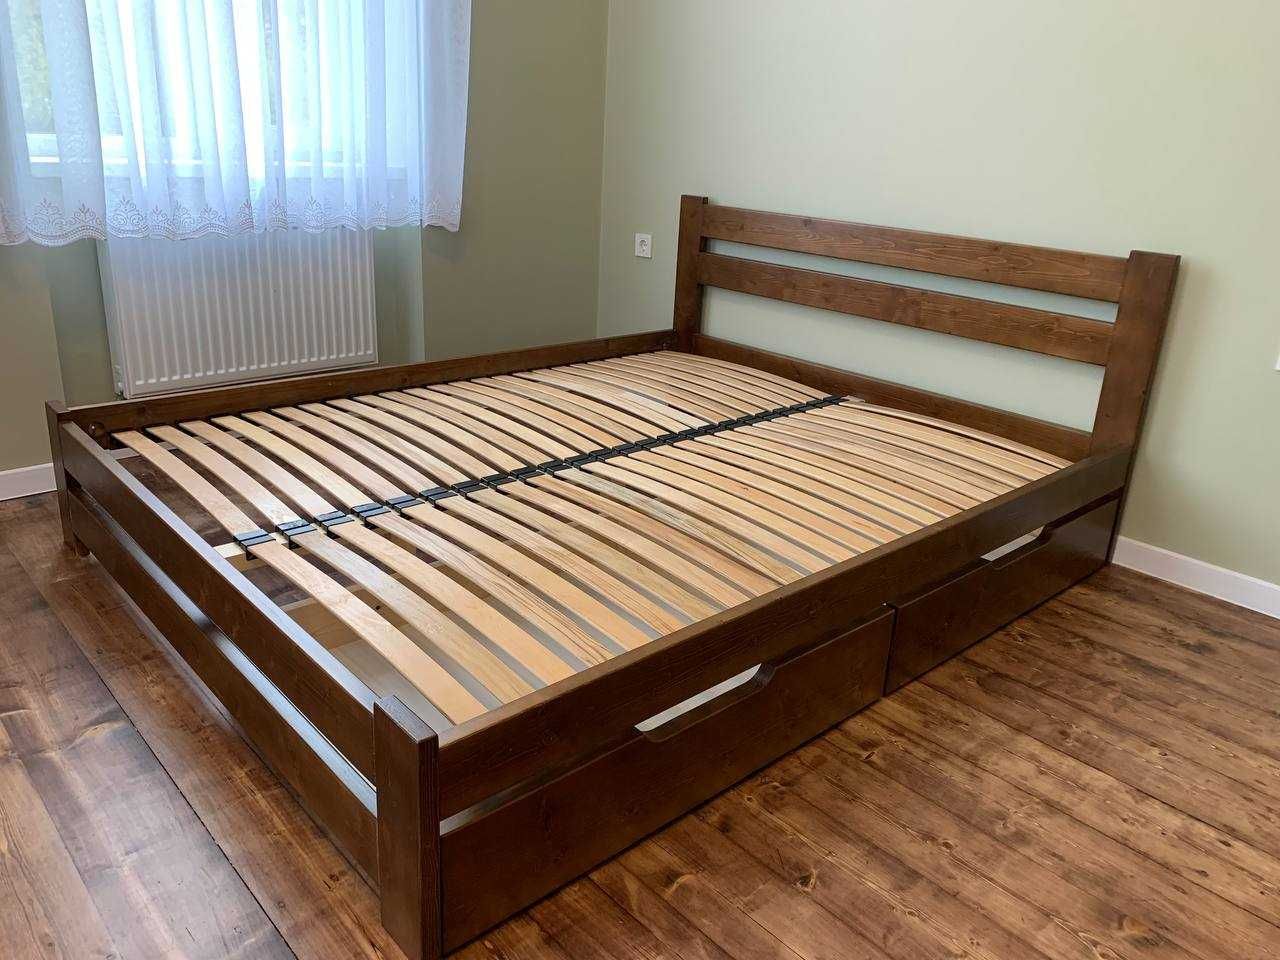 Деревяне двоспальне ліжко яке Ви так довго шукали)) Кровать 160х200